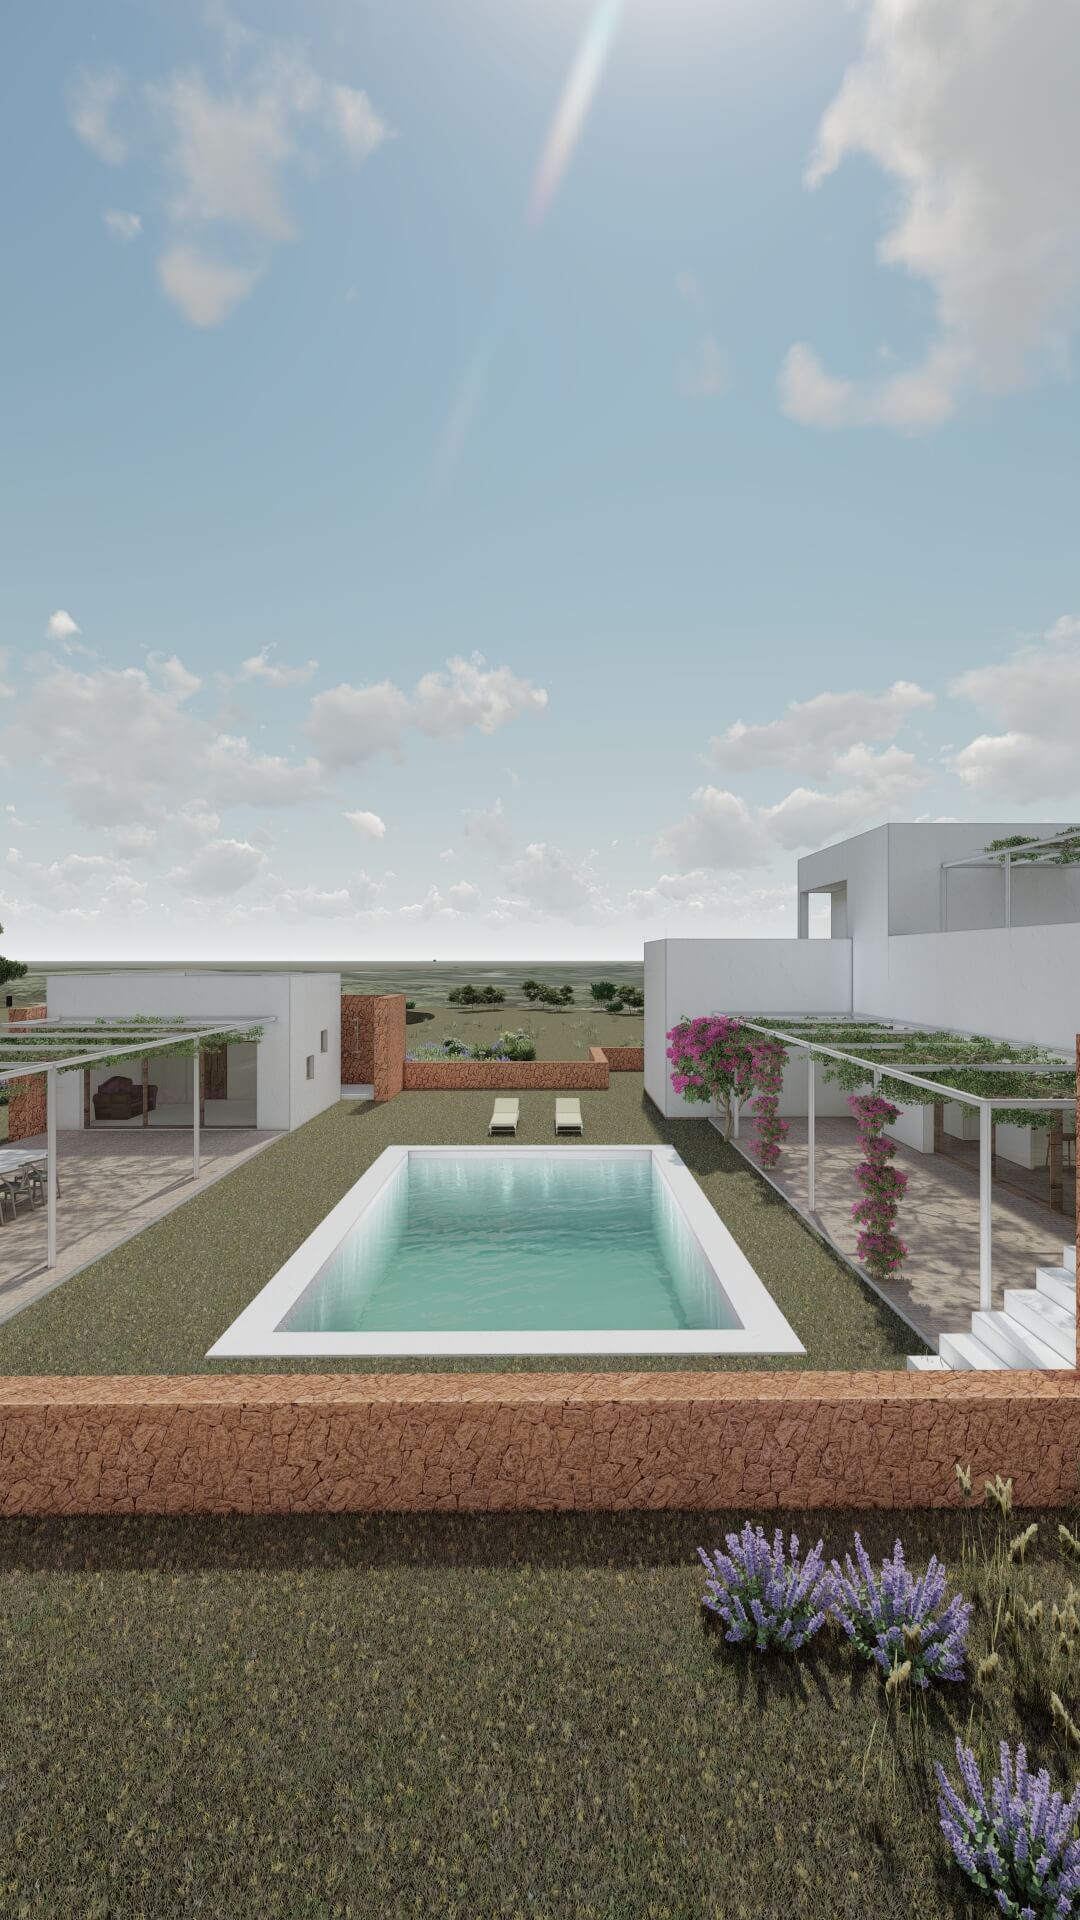 Render del proyecto de arquitectura Passivhaus de KLARQ con una vivienda rodeada de vegetación y una piscina como eje central.